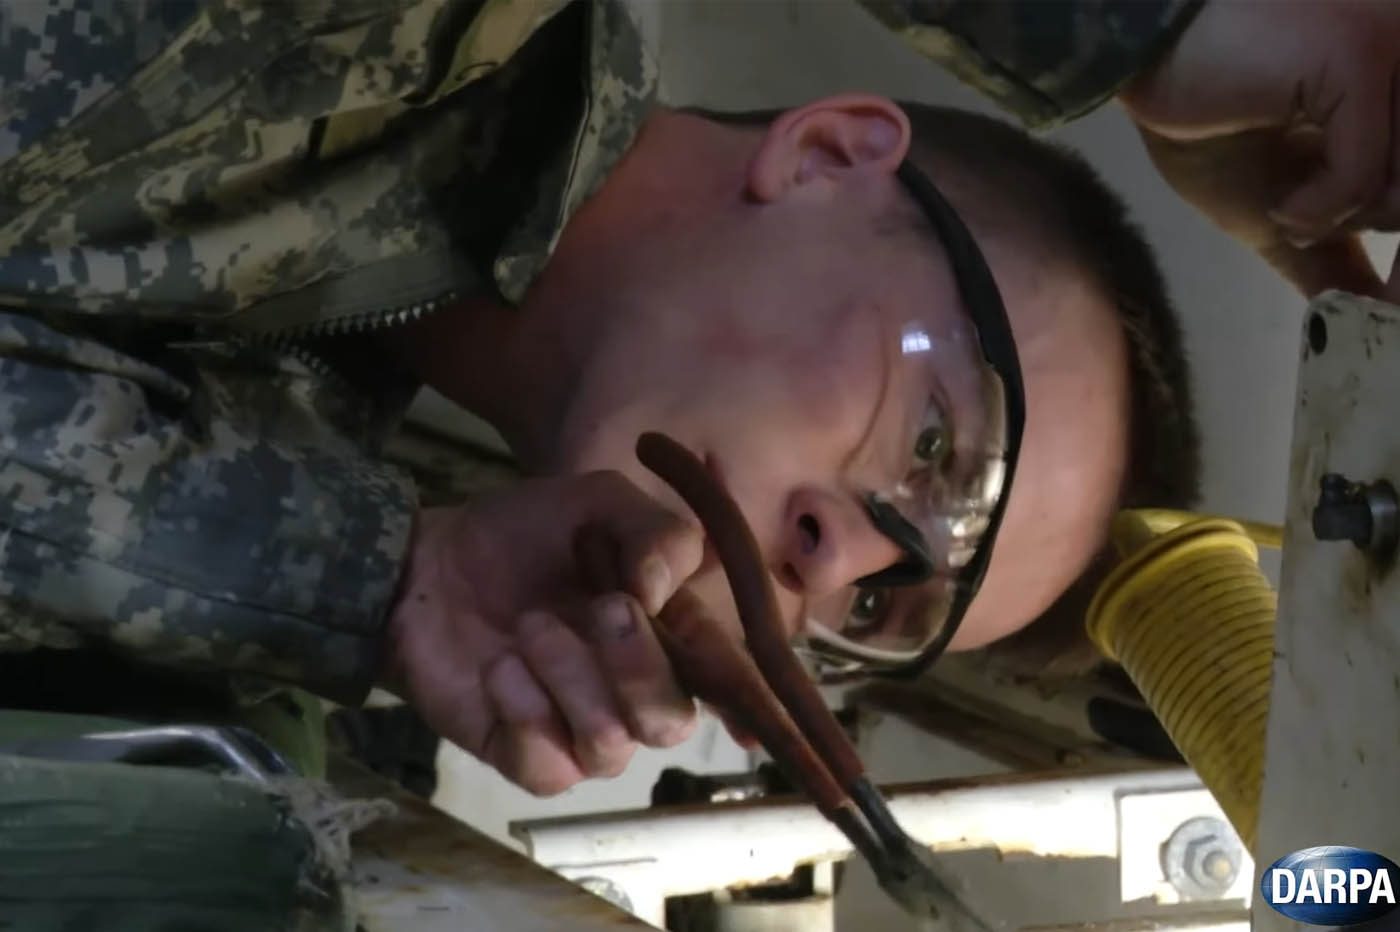 La DARPA veut des lunettes pour former et épauler les soldats américains